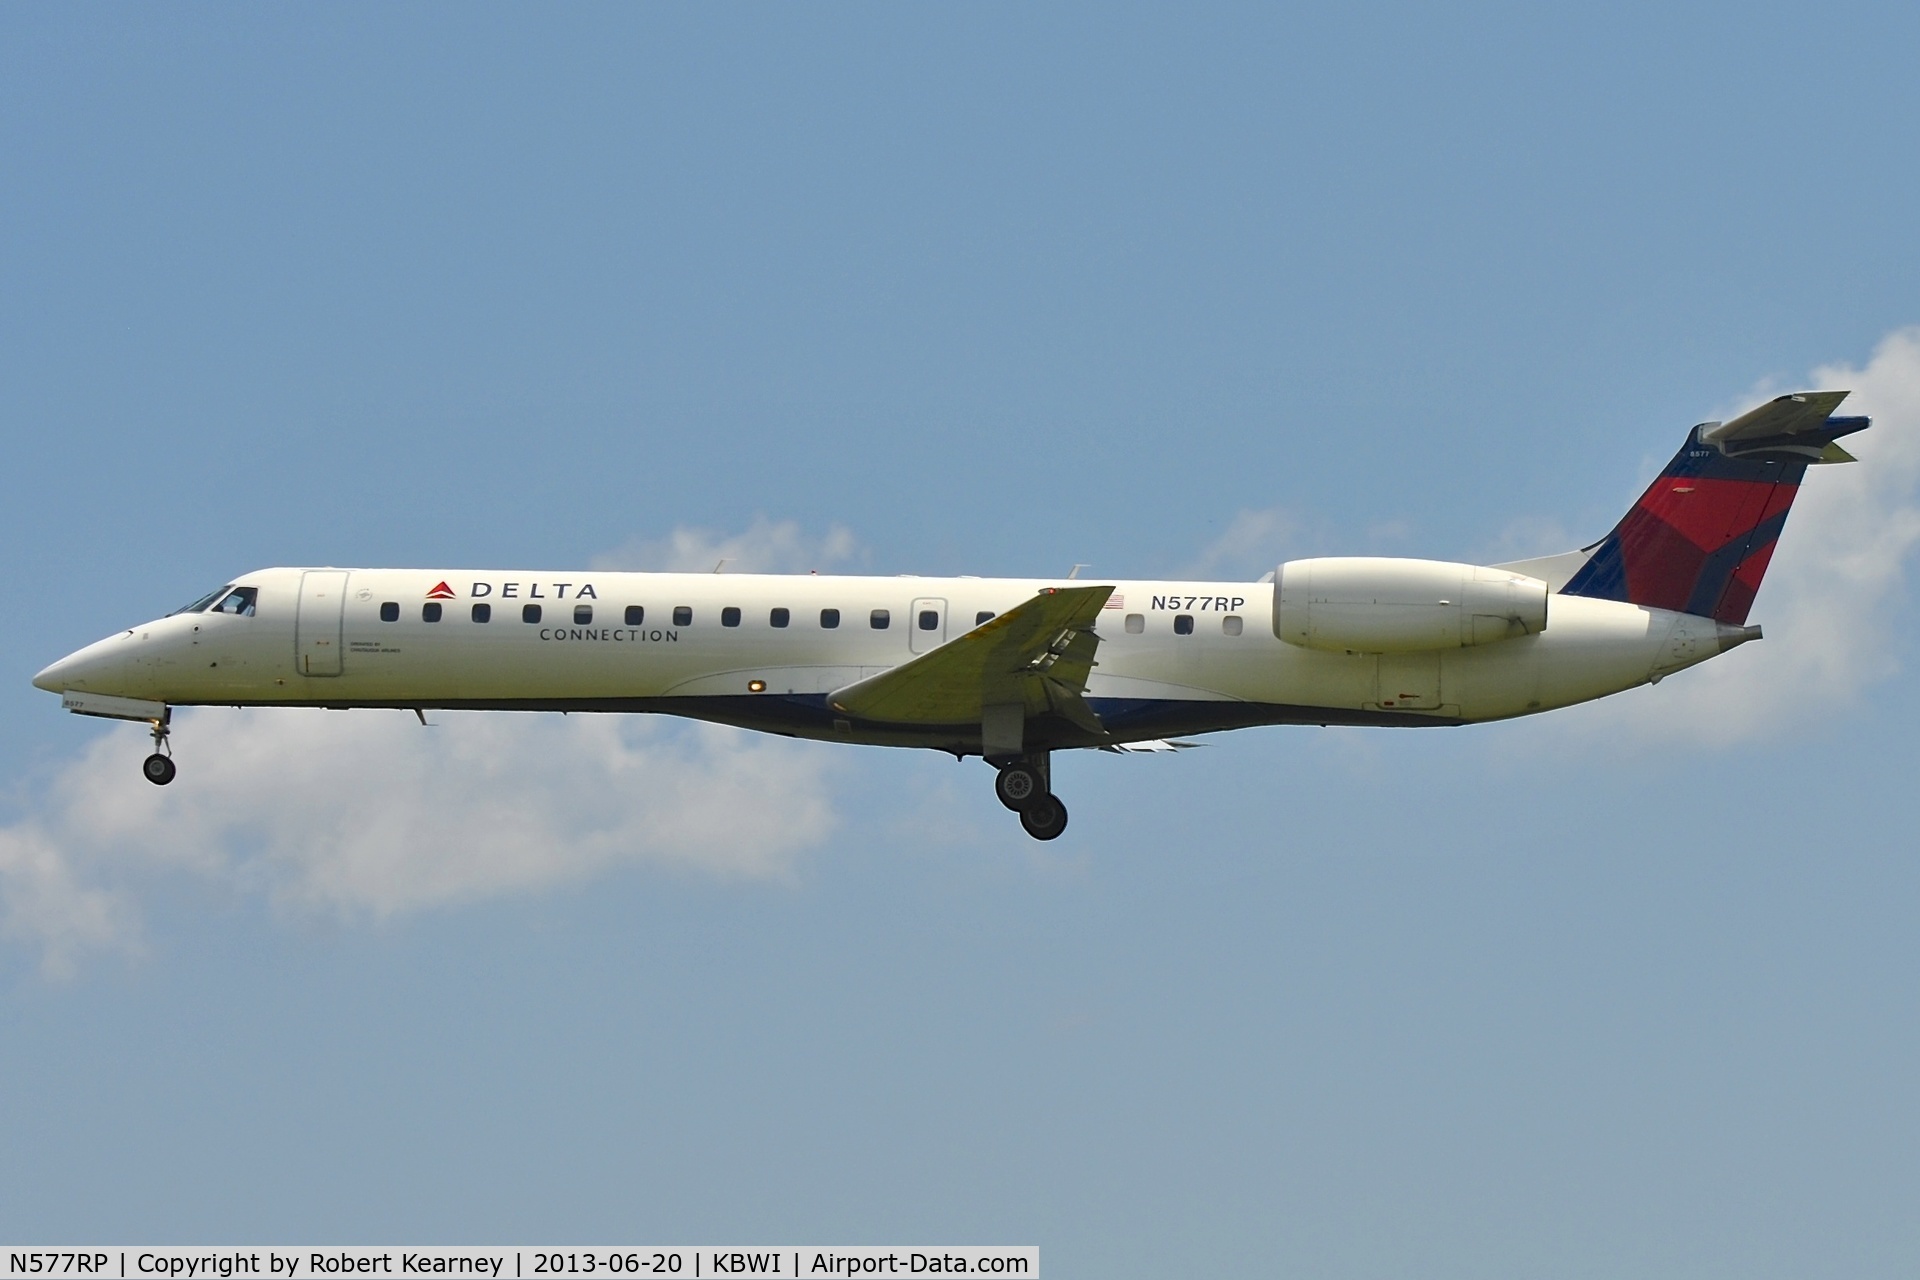 N577RP, 2004 Embraer ERJ-145LR (EMB-145LR) C/N 14500862, On short finals for r/w 33L